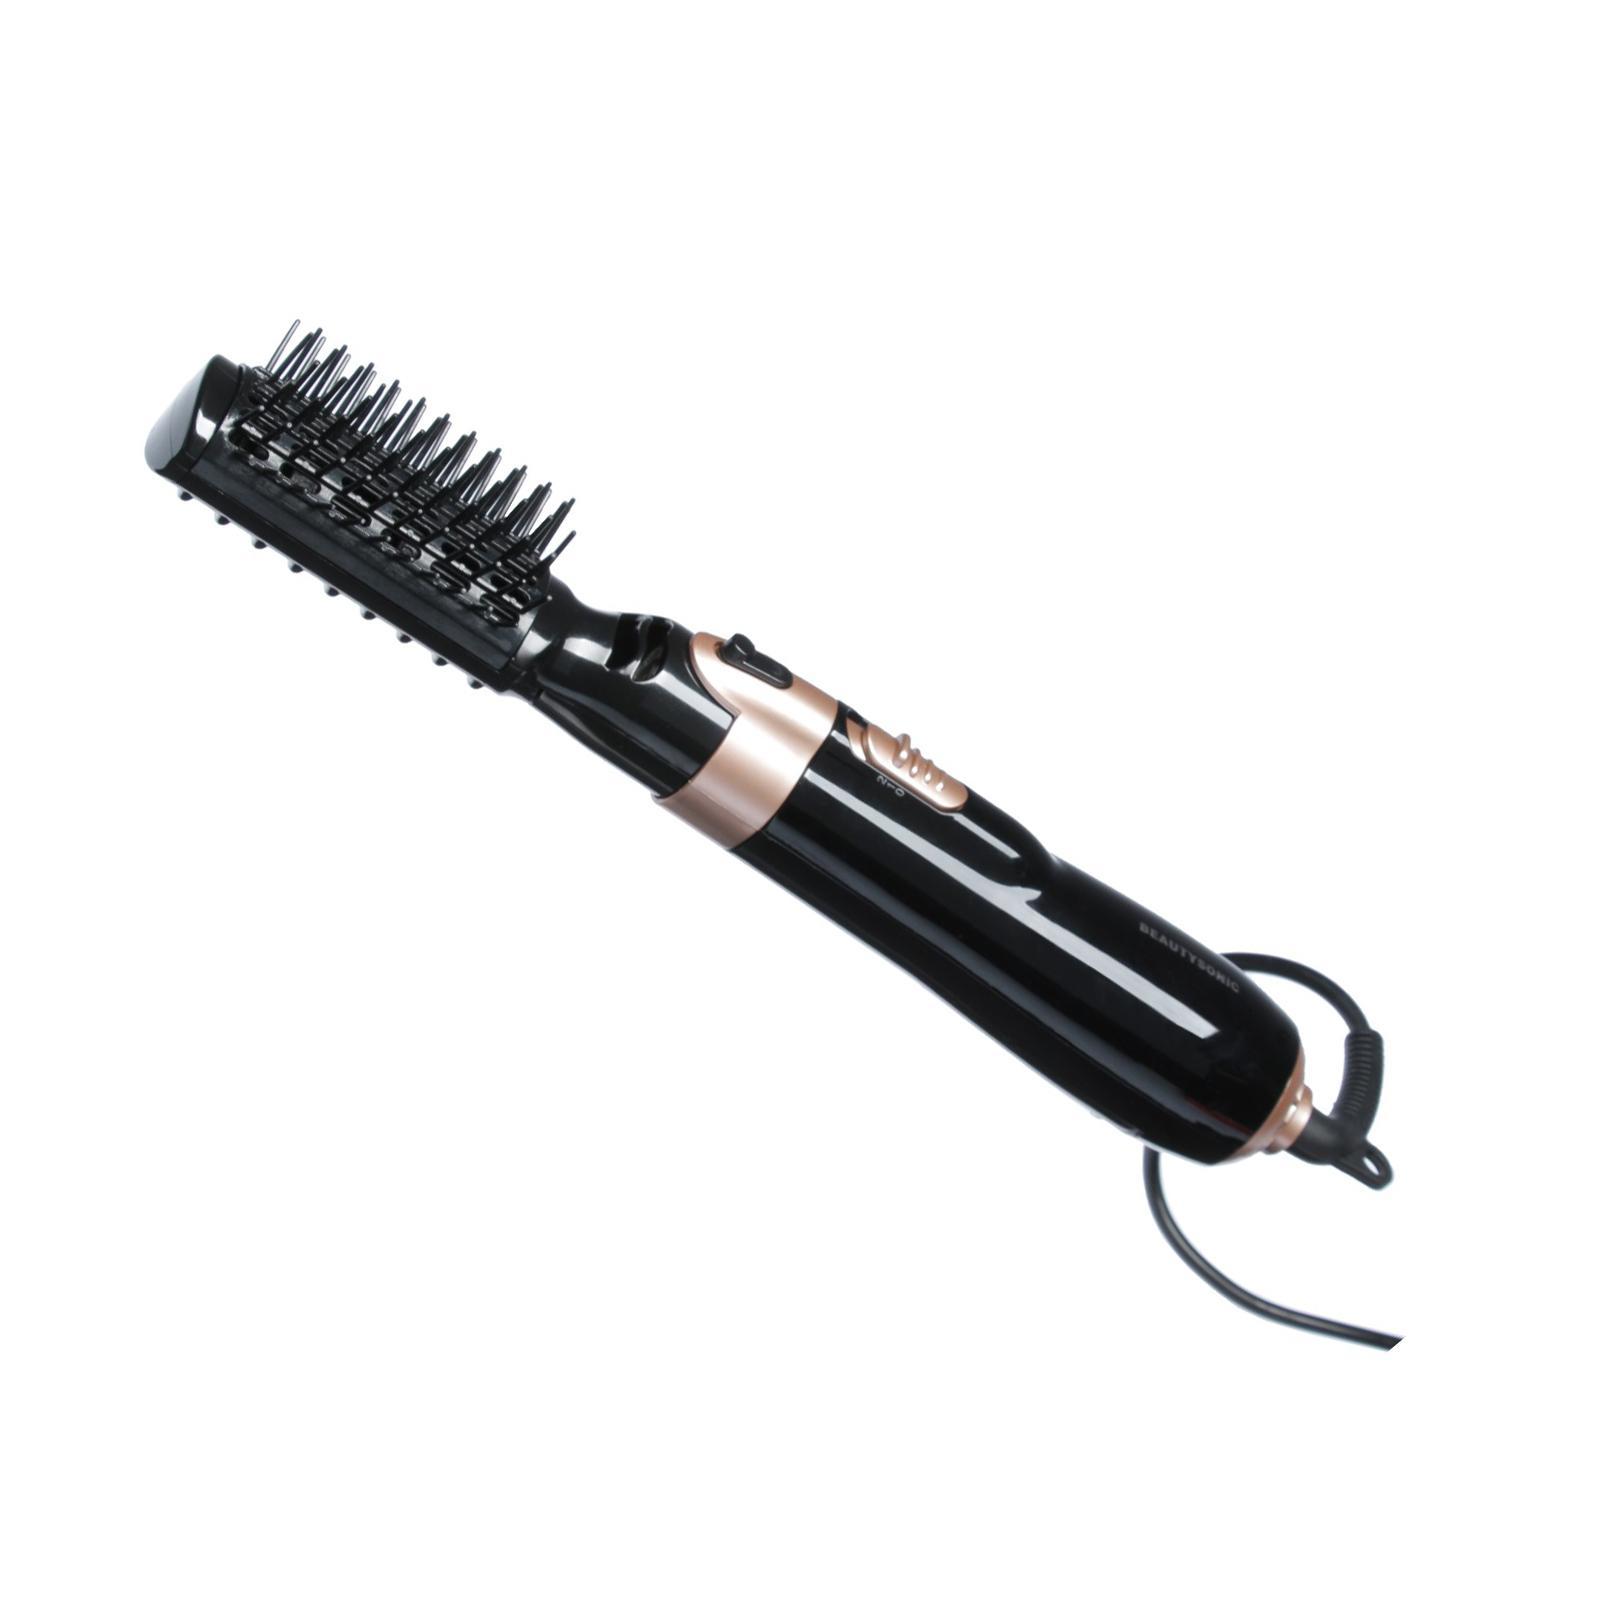 Фен-щетка Luazon LFS-02 1400 Вт черный 1шт щетка для расчесывания волос антистатическая расческа 9 рядов пластиковый парикмахерский массаж